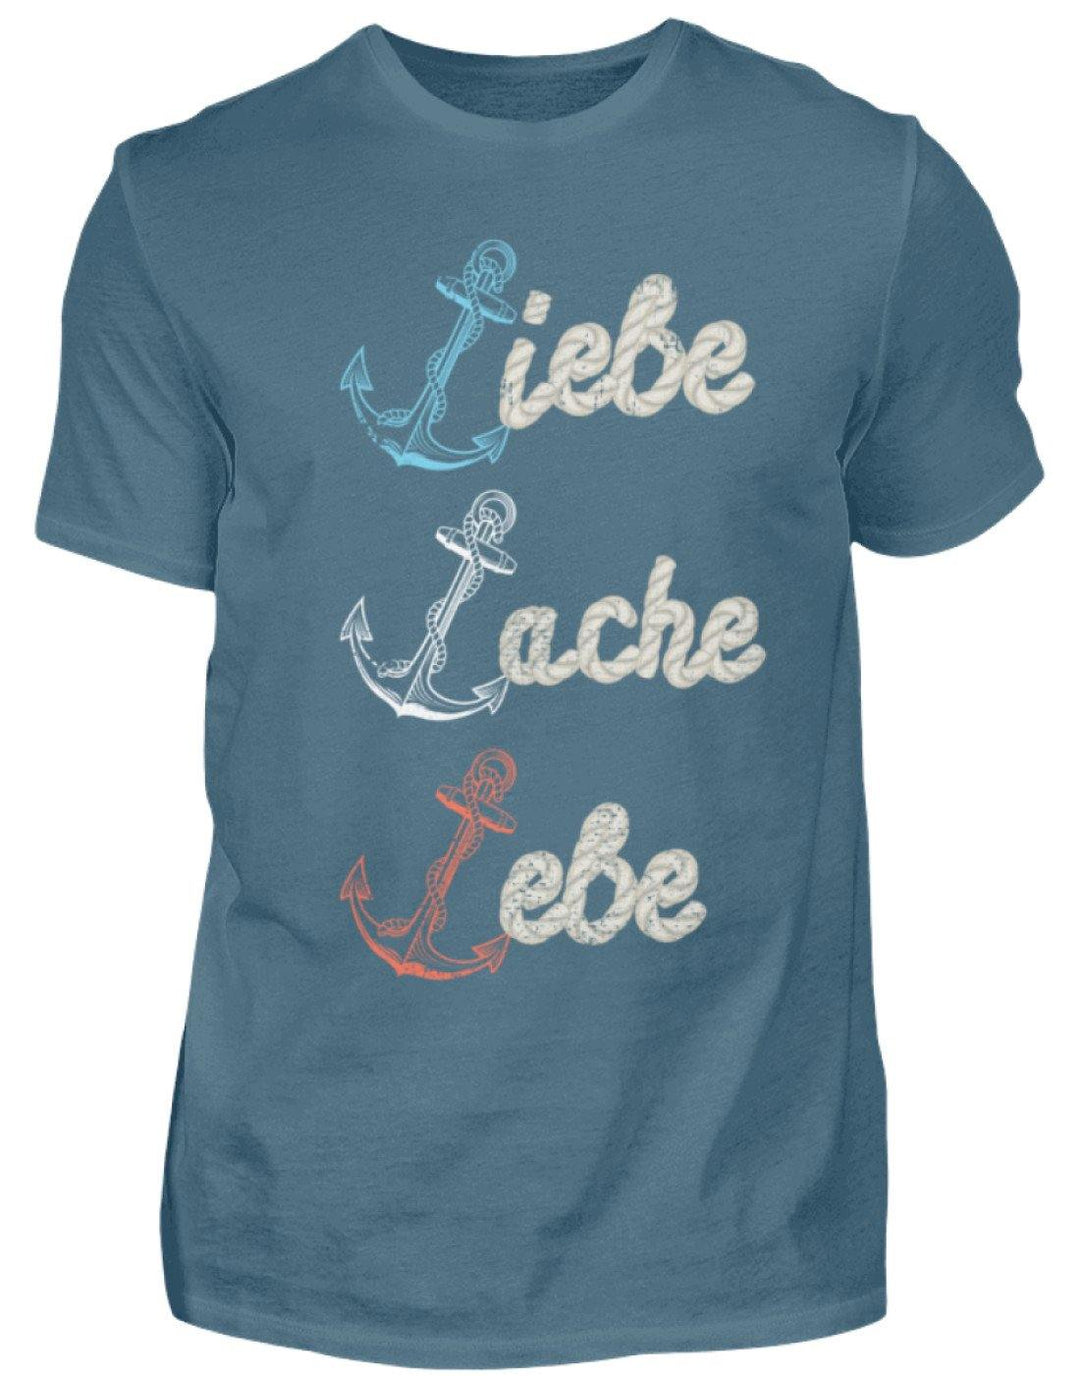 Liebe Lache Lebe - Norddeutsch   - Herren Shirt - Words on Shirts Sag es mit dem Mittelfinger Shirts Hoodies Sweatshirt Taschen Gymsack Spruch Sprüche Statement